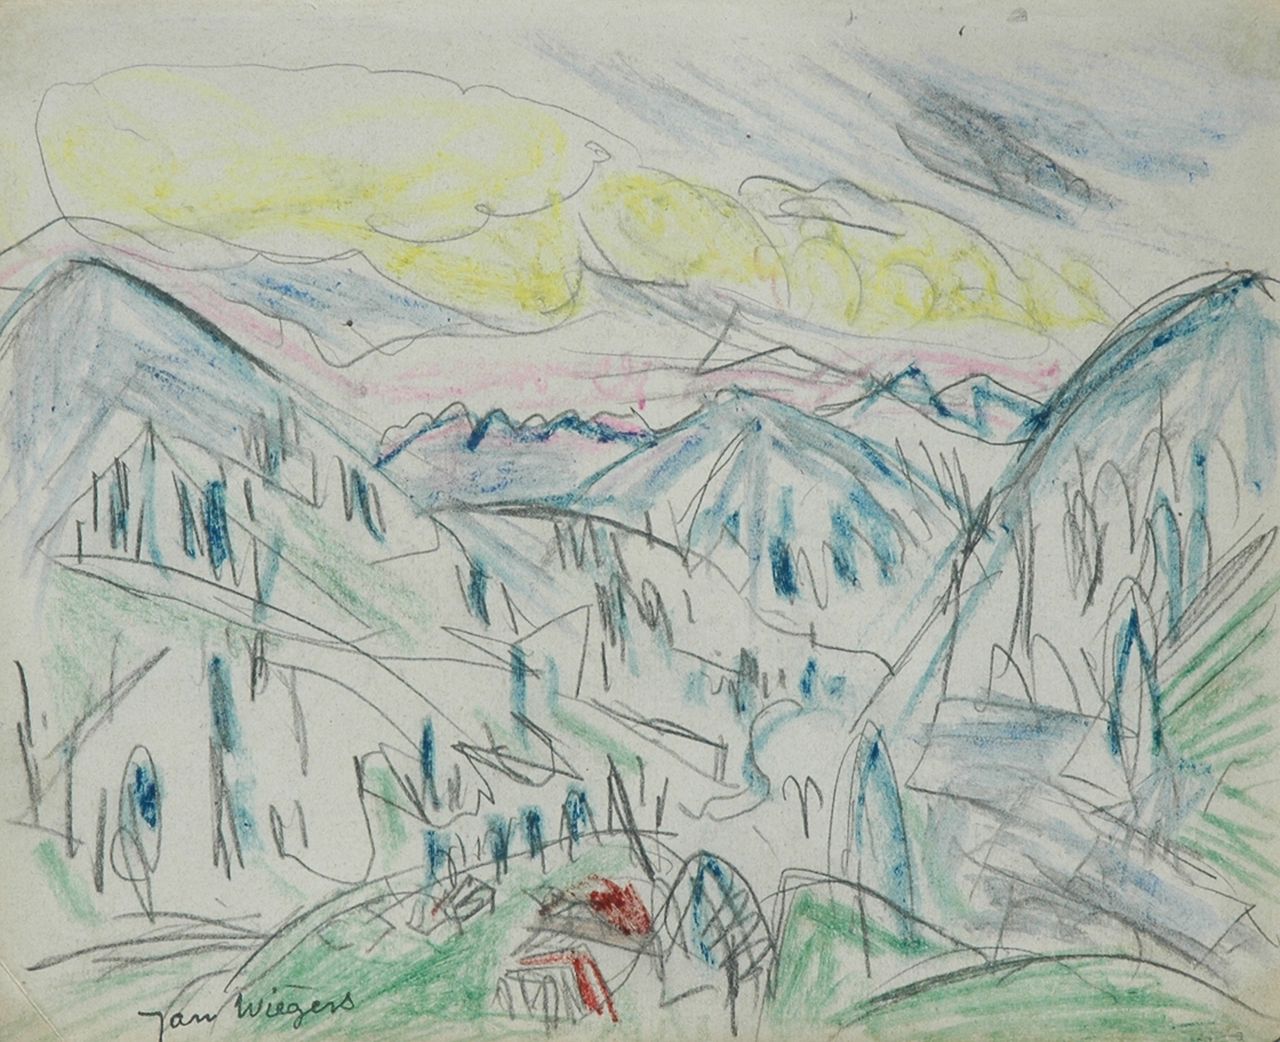 Wiegers J.  | Jan Wiegers, Berglandschap Davos; verso: potloodschets van jongetje, potlood en waskrijt op papier 17,5 x 21,7 cm, gesigneerd linksonder met naamstempel